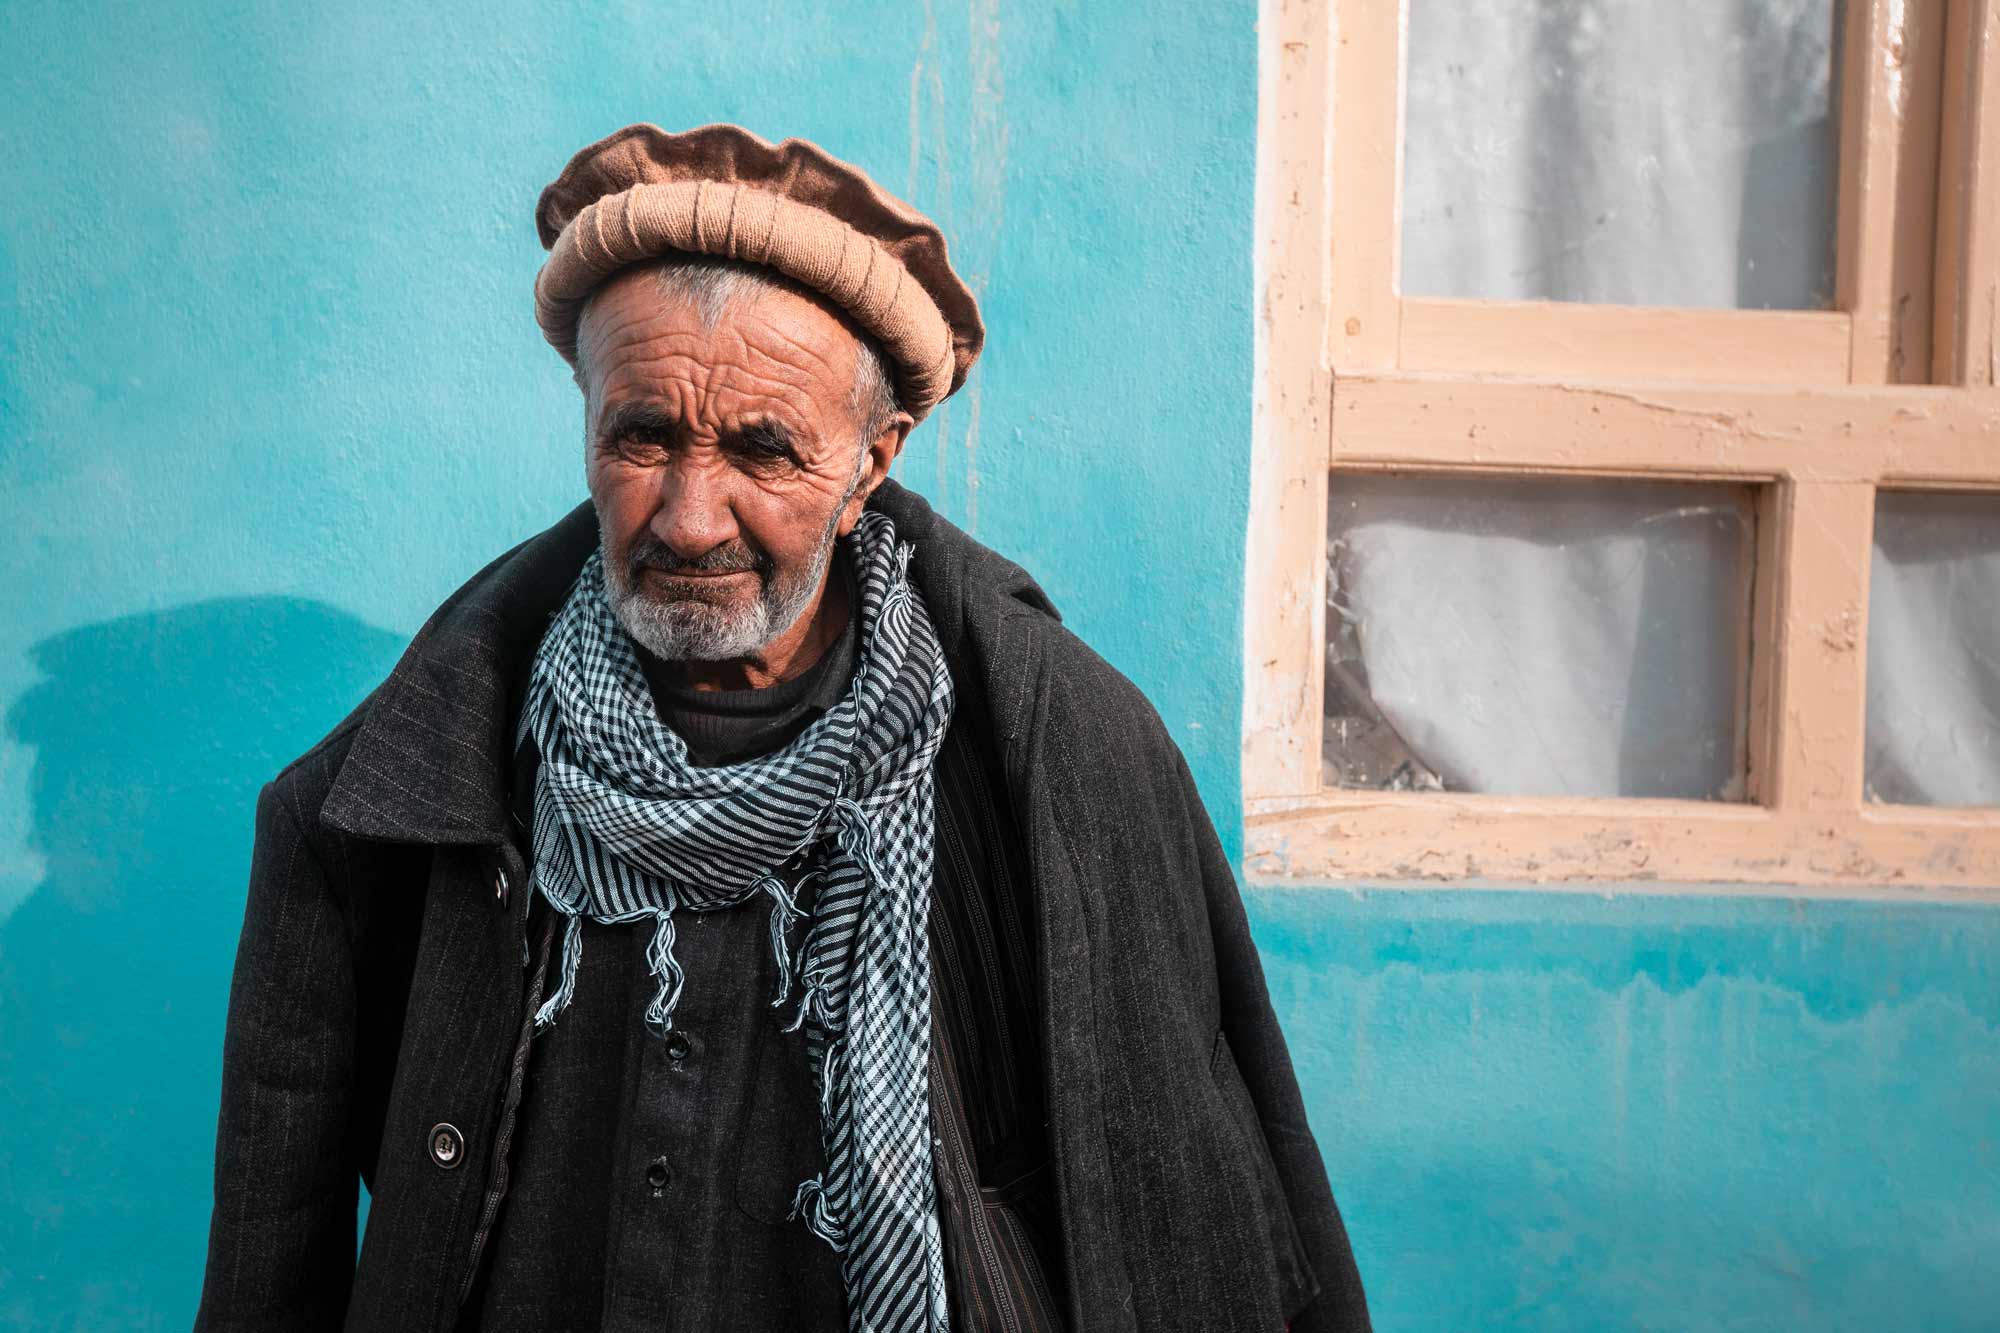 Fotografie di reportage realizzate da Gilberto Maltinti dello studio Parioli Fotografia durante il viaggio in Afghanistan e Tagikistan, nel Corridoio del Whakan.